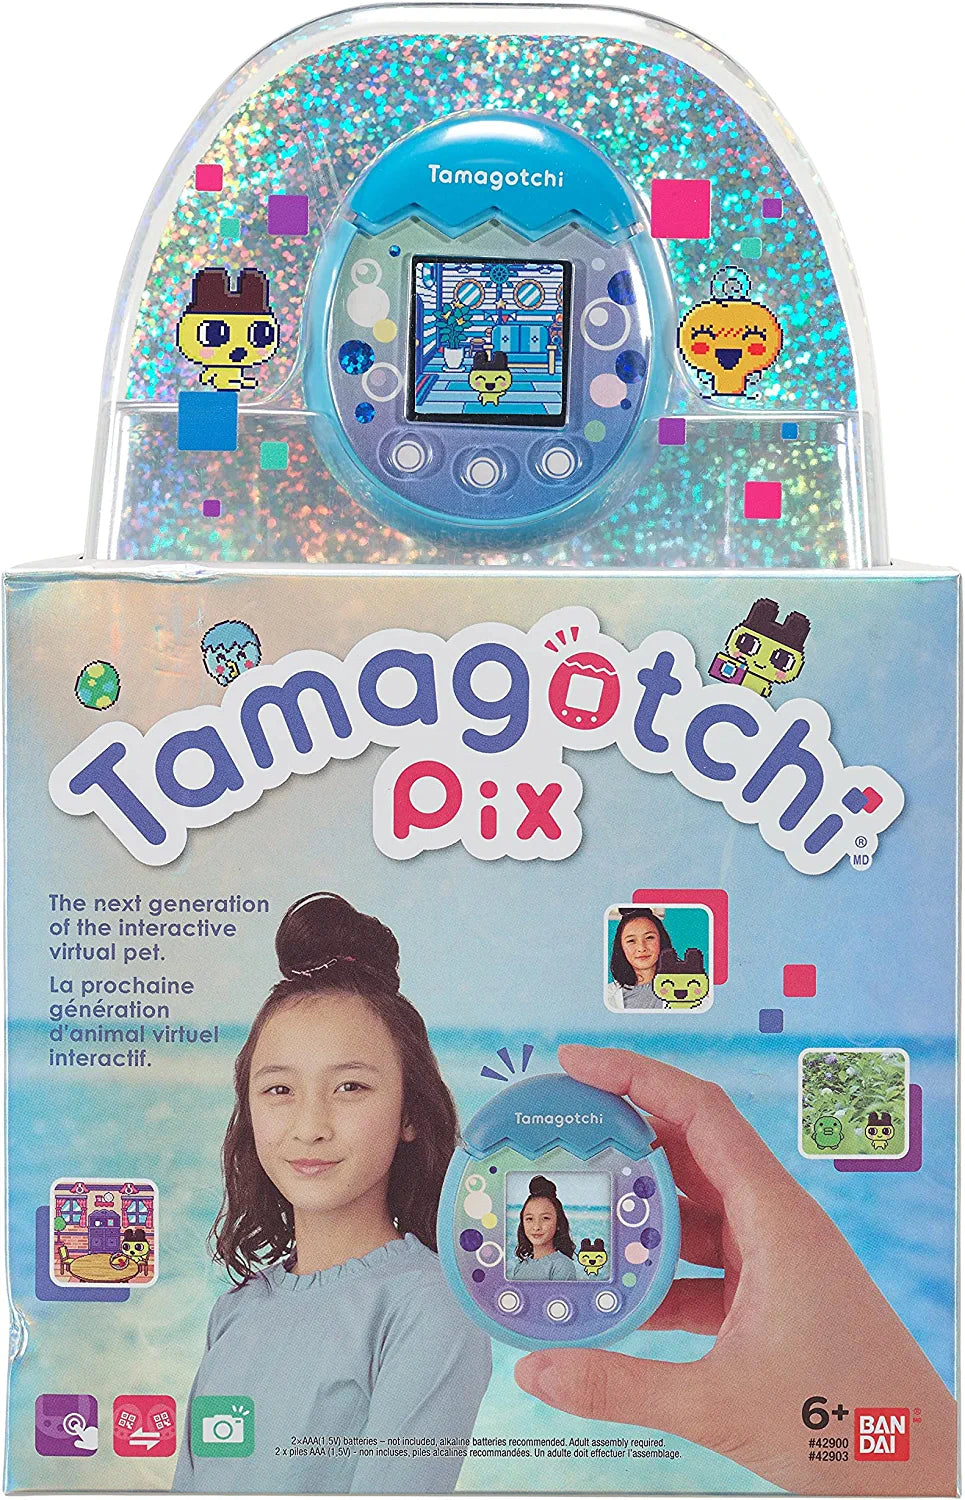  TAMAGOTCHI 42901 Bandai Pix-La próxima generación de